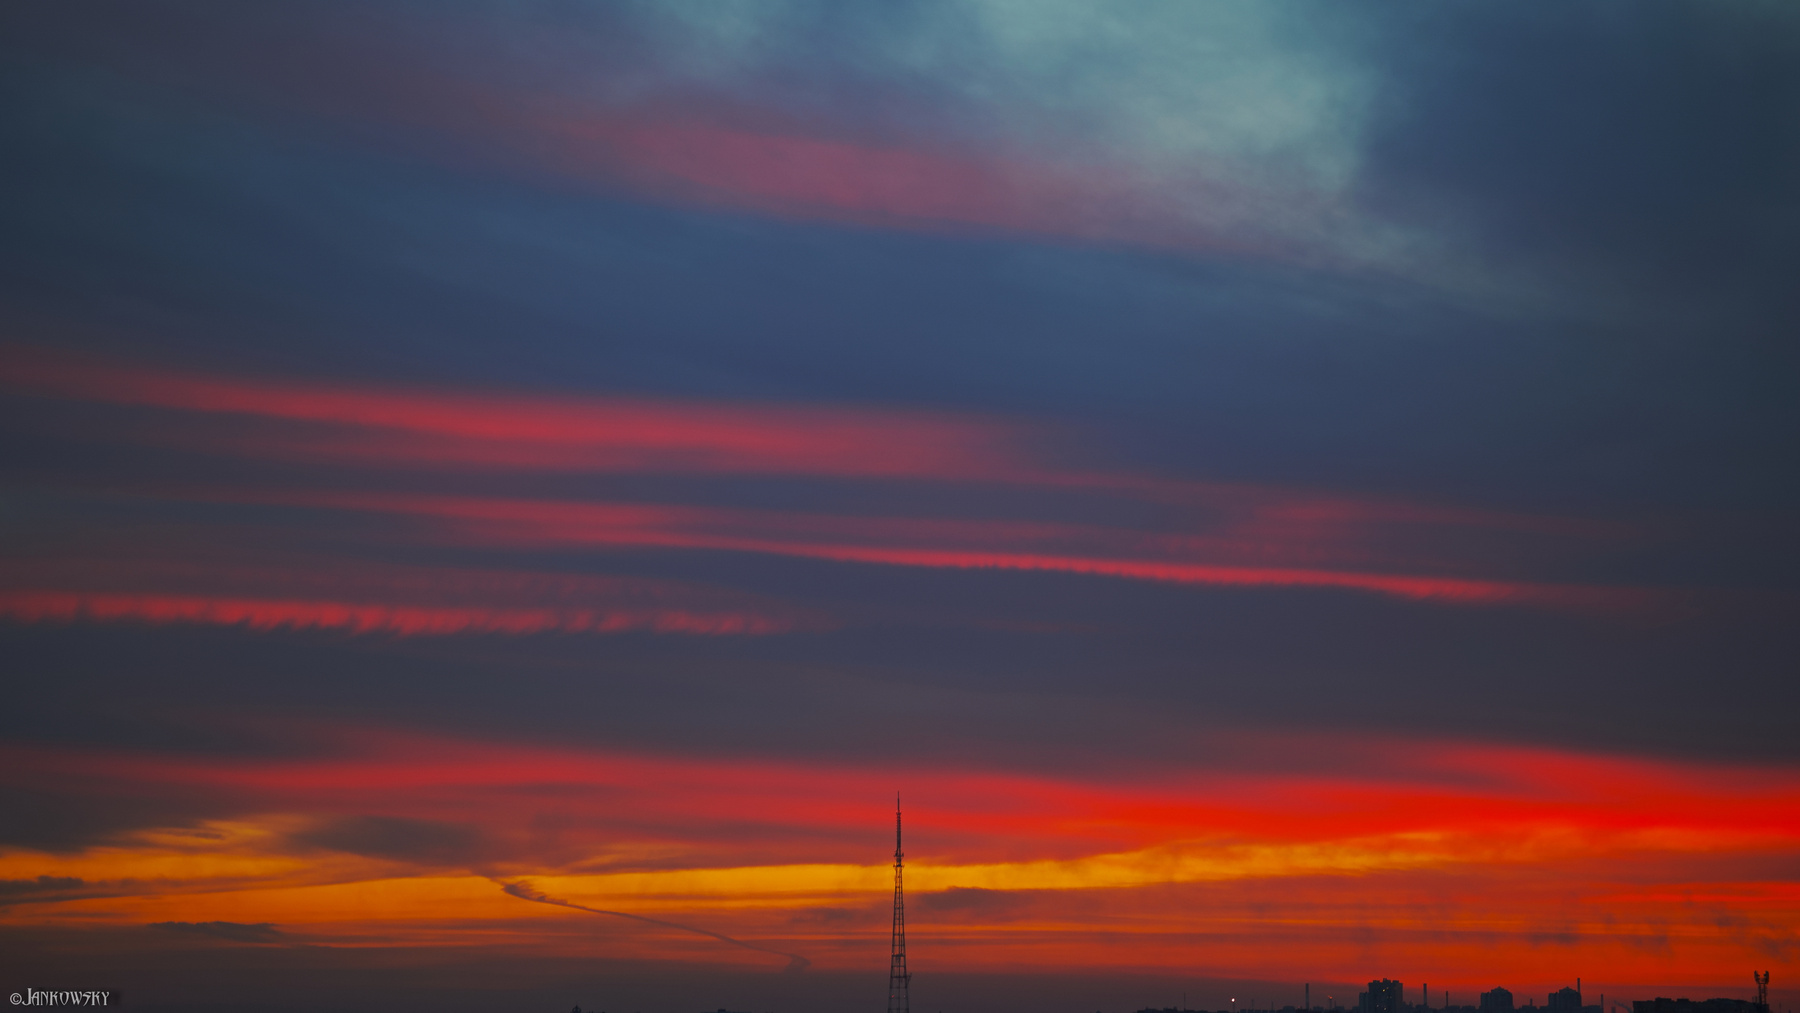 Foveon-безумие Омского неба 12.05.21 foveon sigma dp3 quattro омск закат небо градиент полосы красный оранжевый